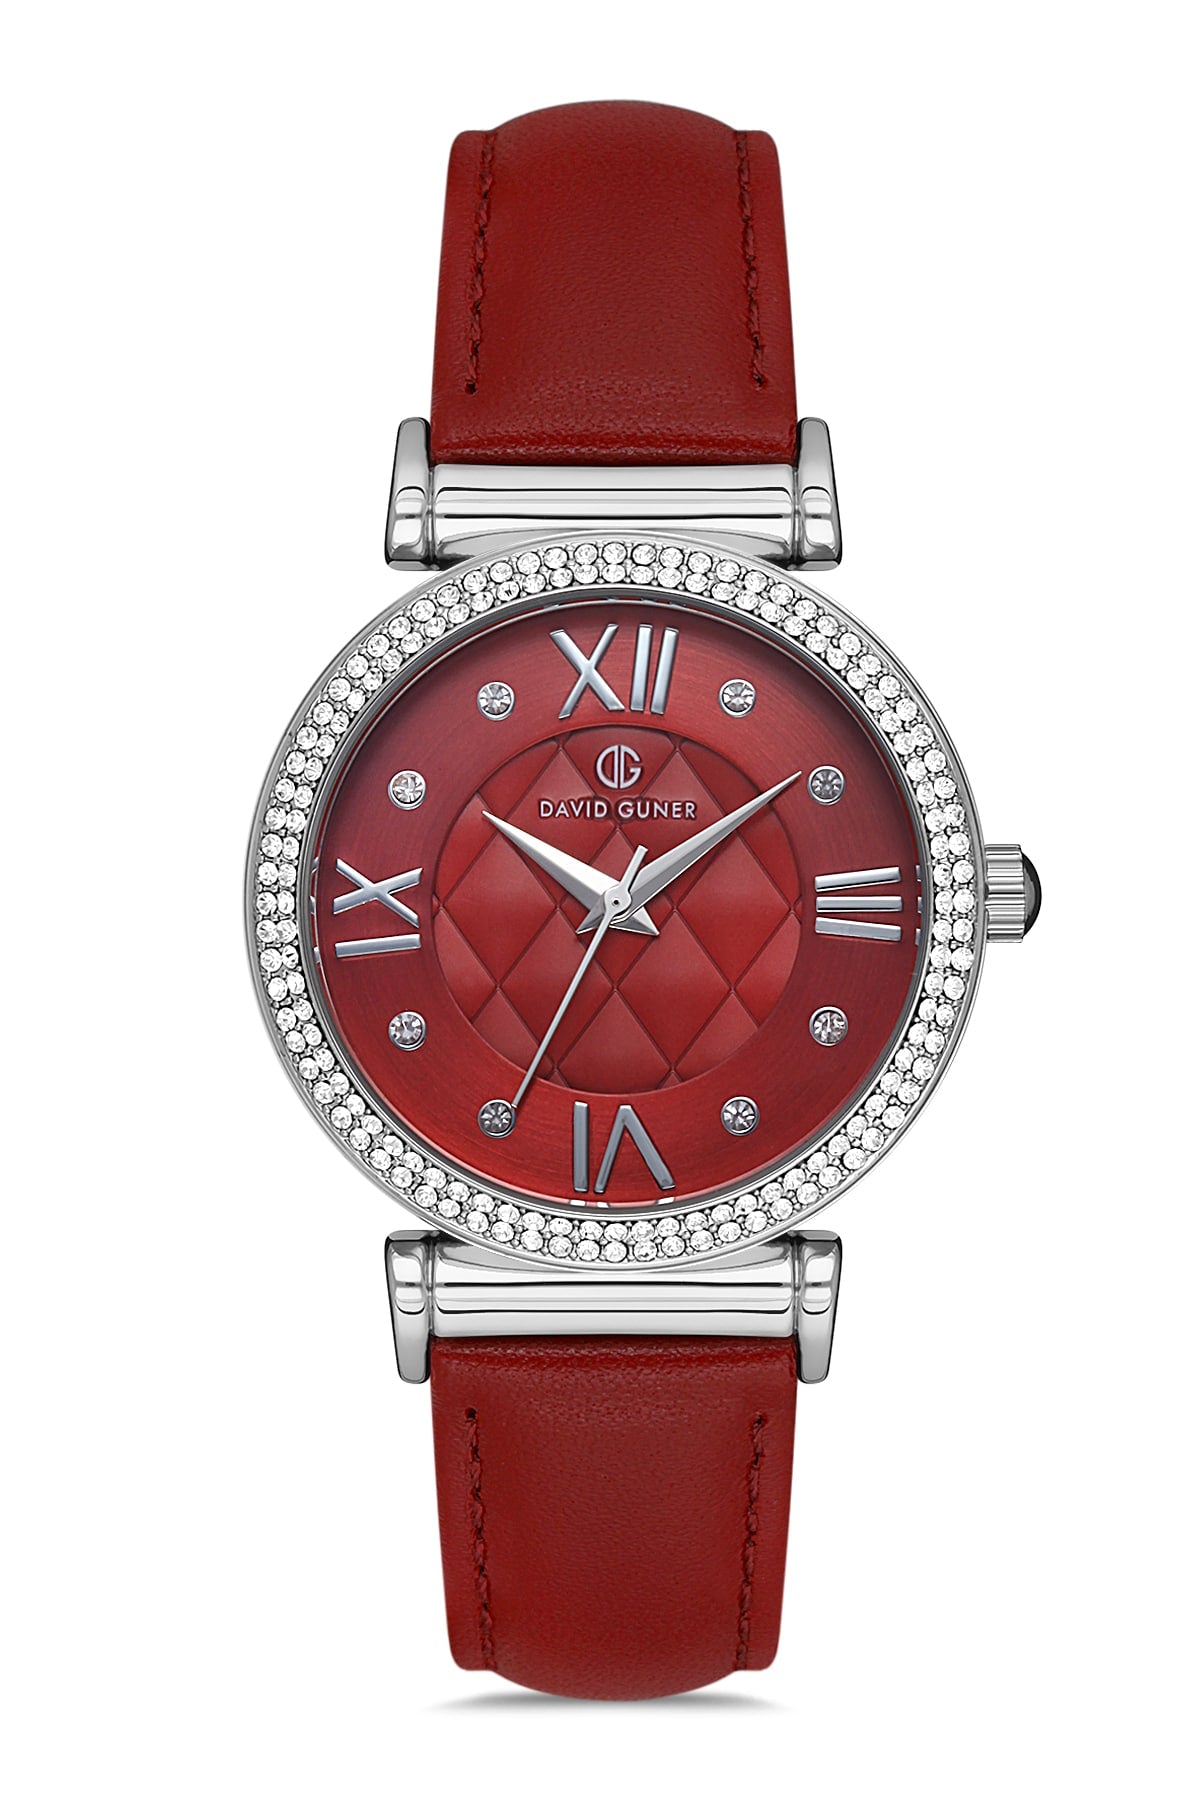 DAVID GUNER Red Leather Strap Women's Wristwatch